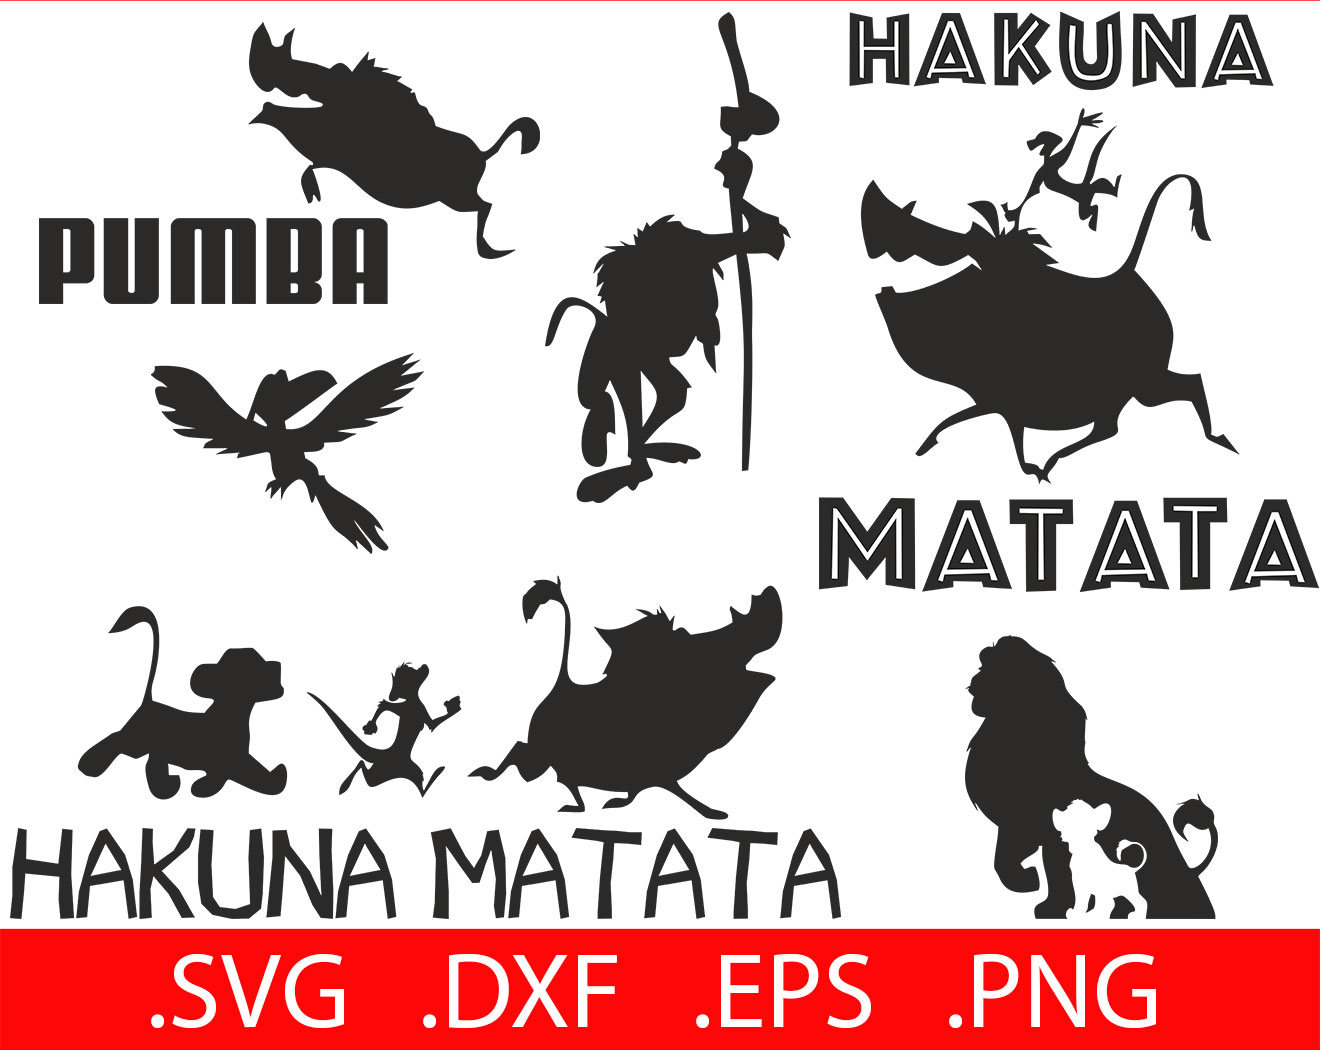 Download Hakuna Matata SVG Files Hakuna Matata Svg Decal Hakuna